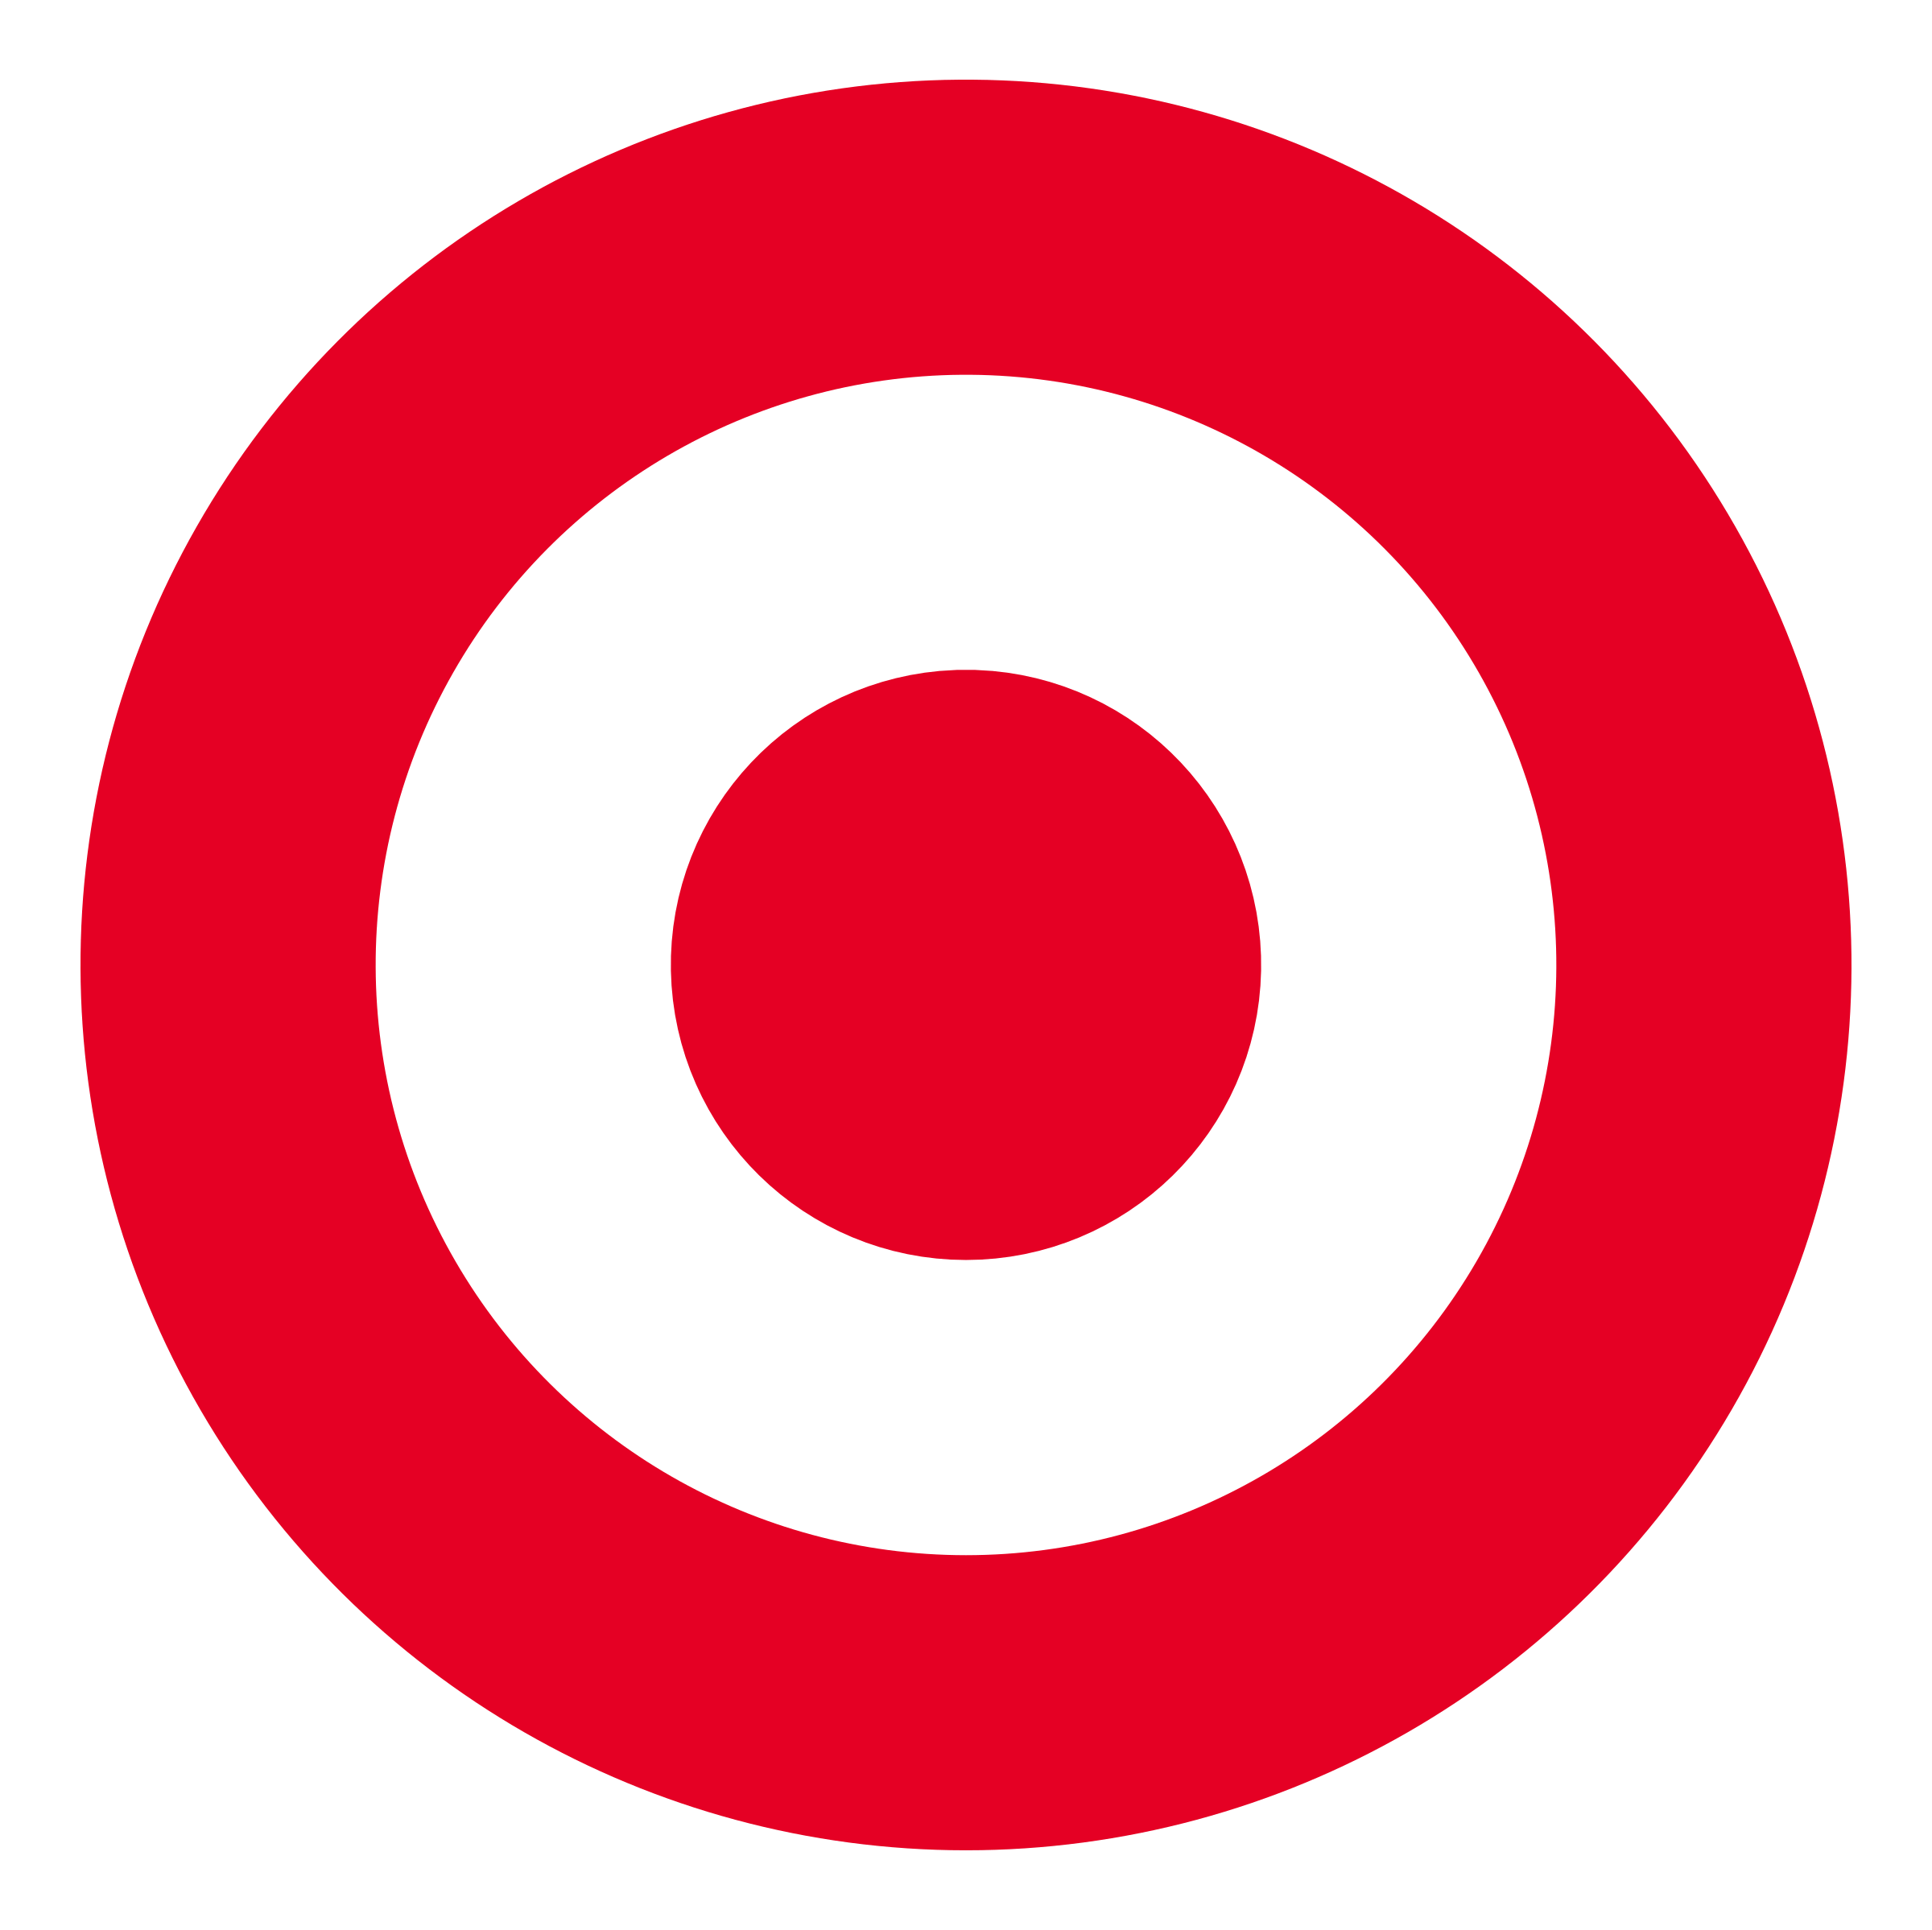 target-logo-transparent (1).png